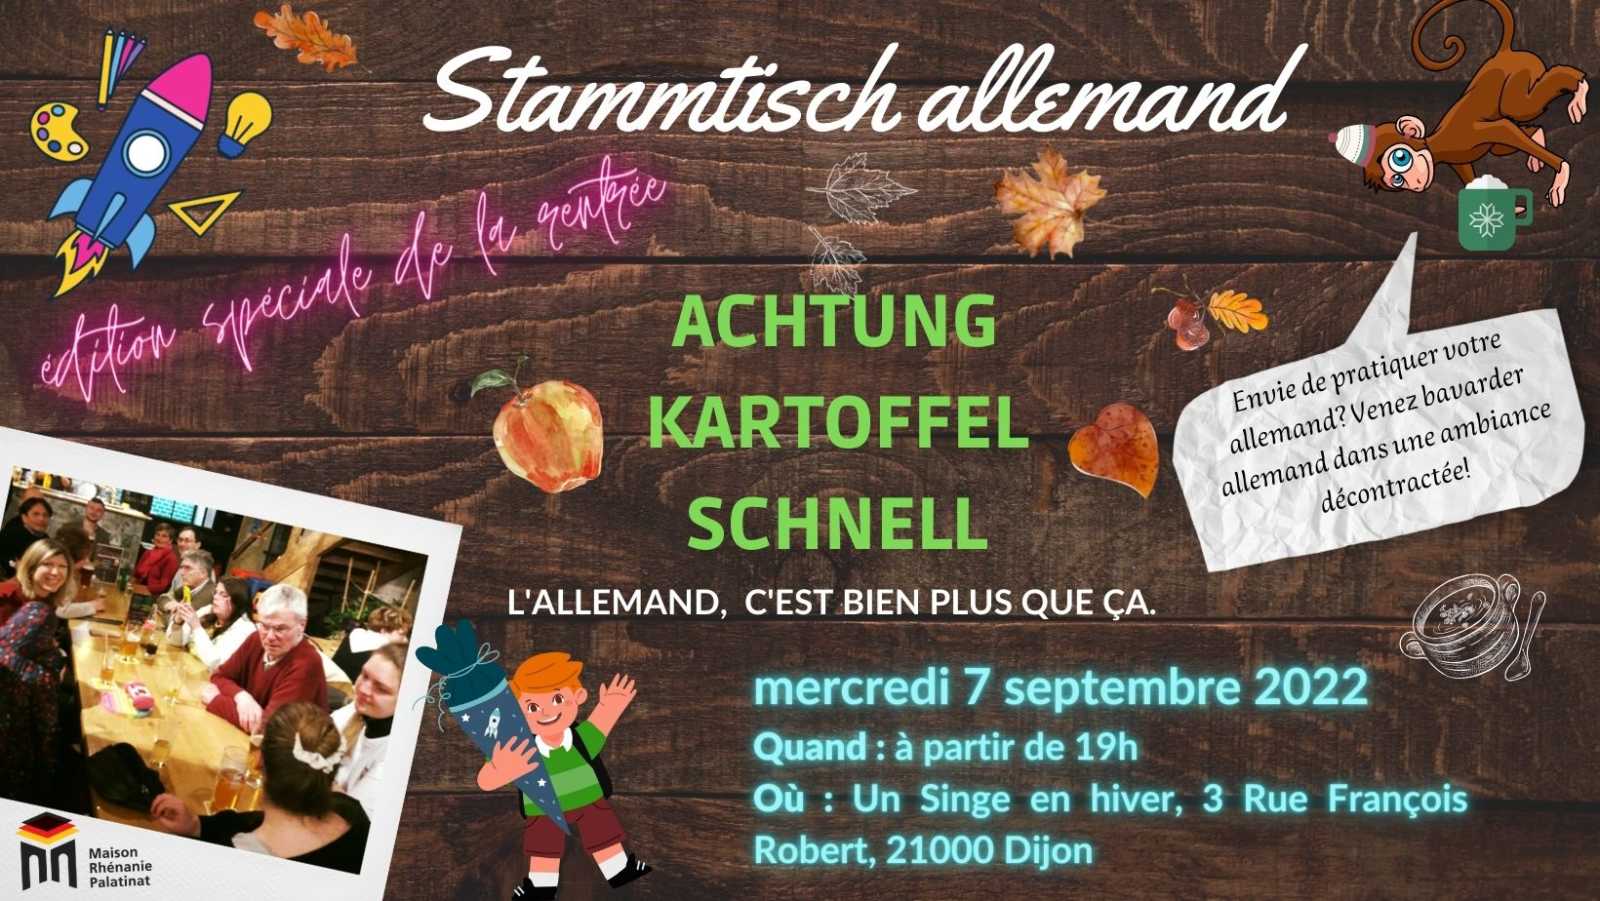 Mercredi 7 septembre 2022 à 19h : Stammtisch Allemand (édition spéciale rentrée 2022)